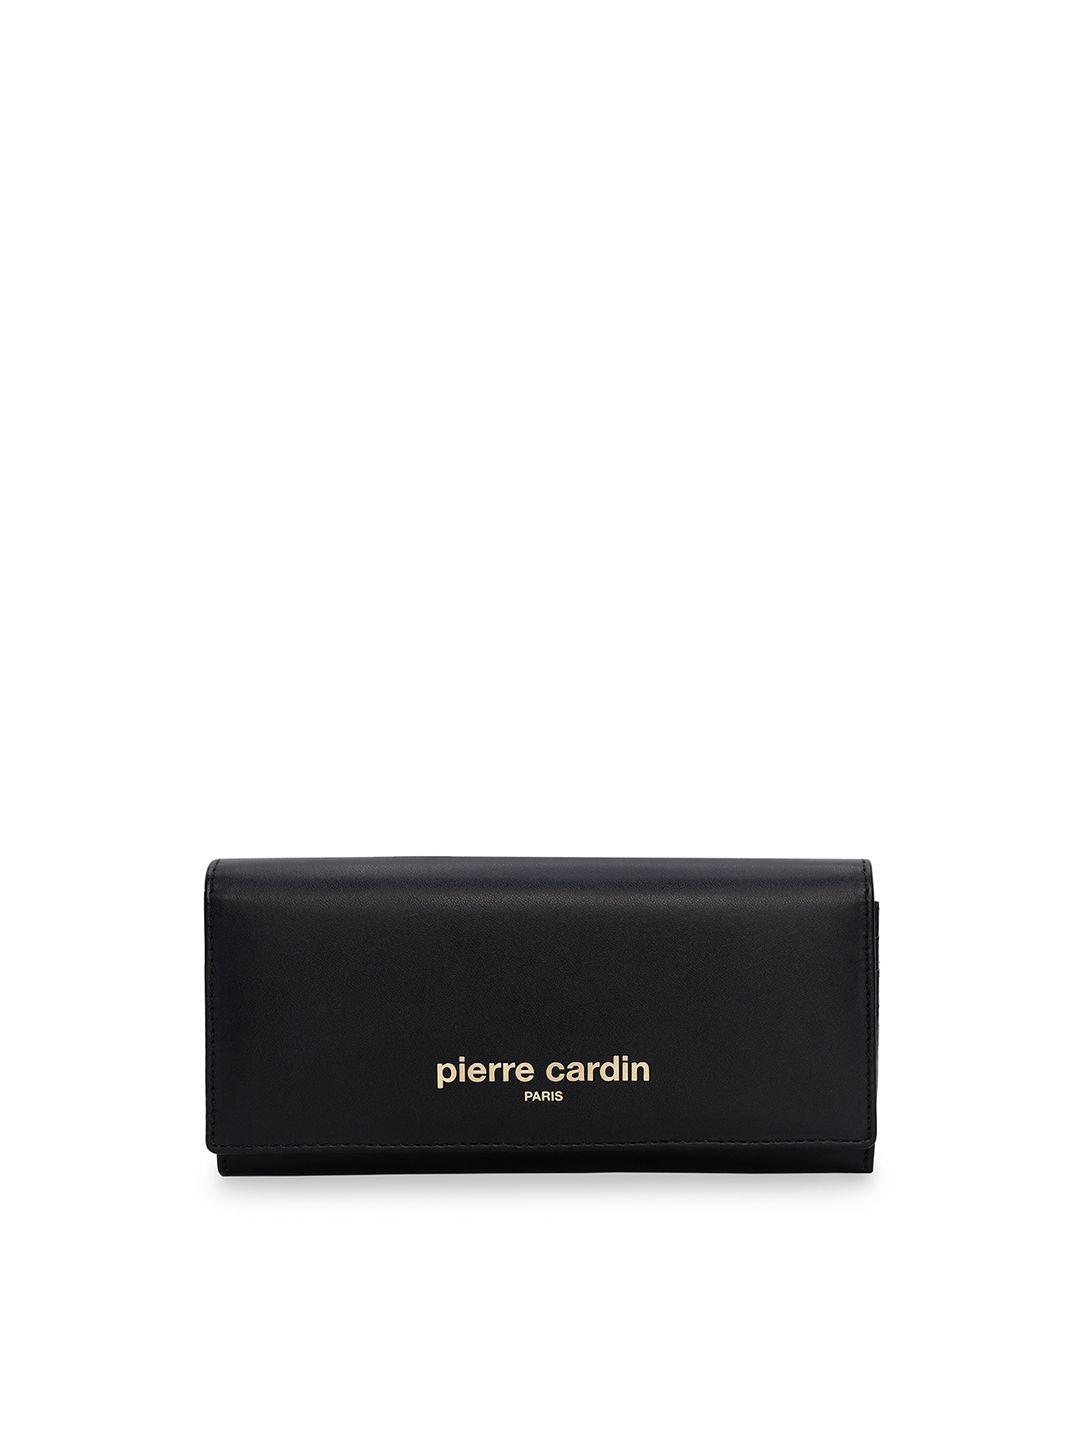 pierre cardin women black solid pu two fold wallet